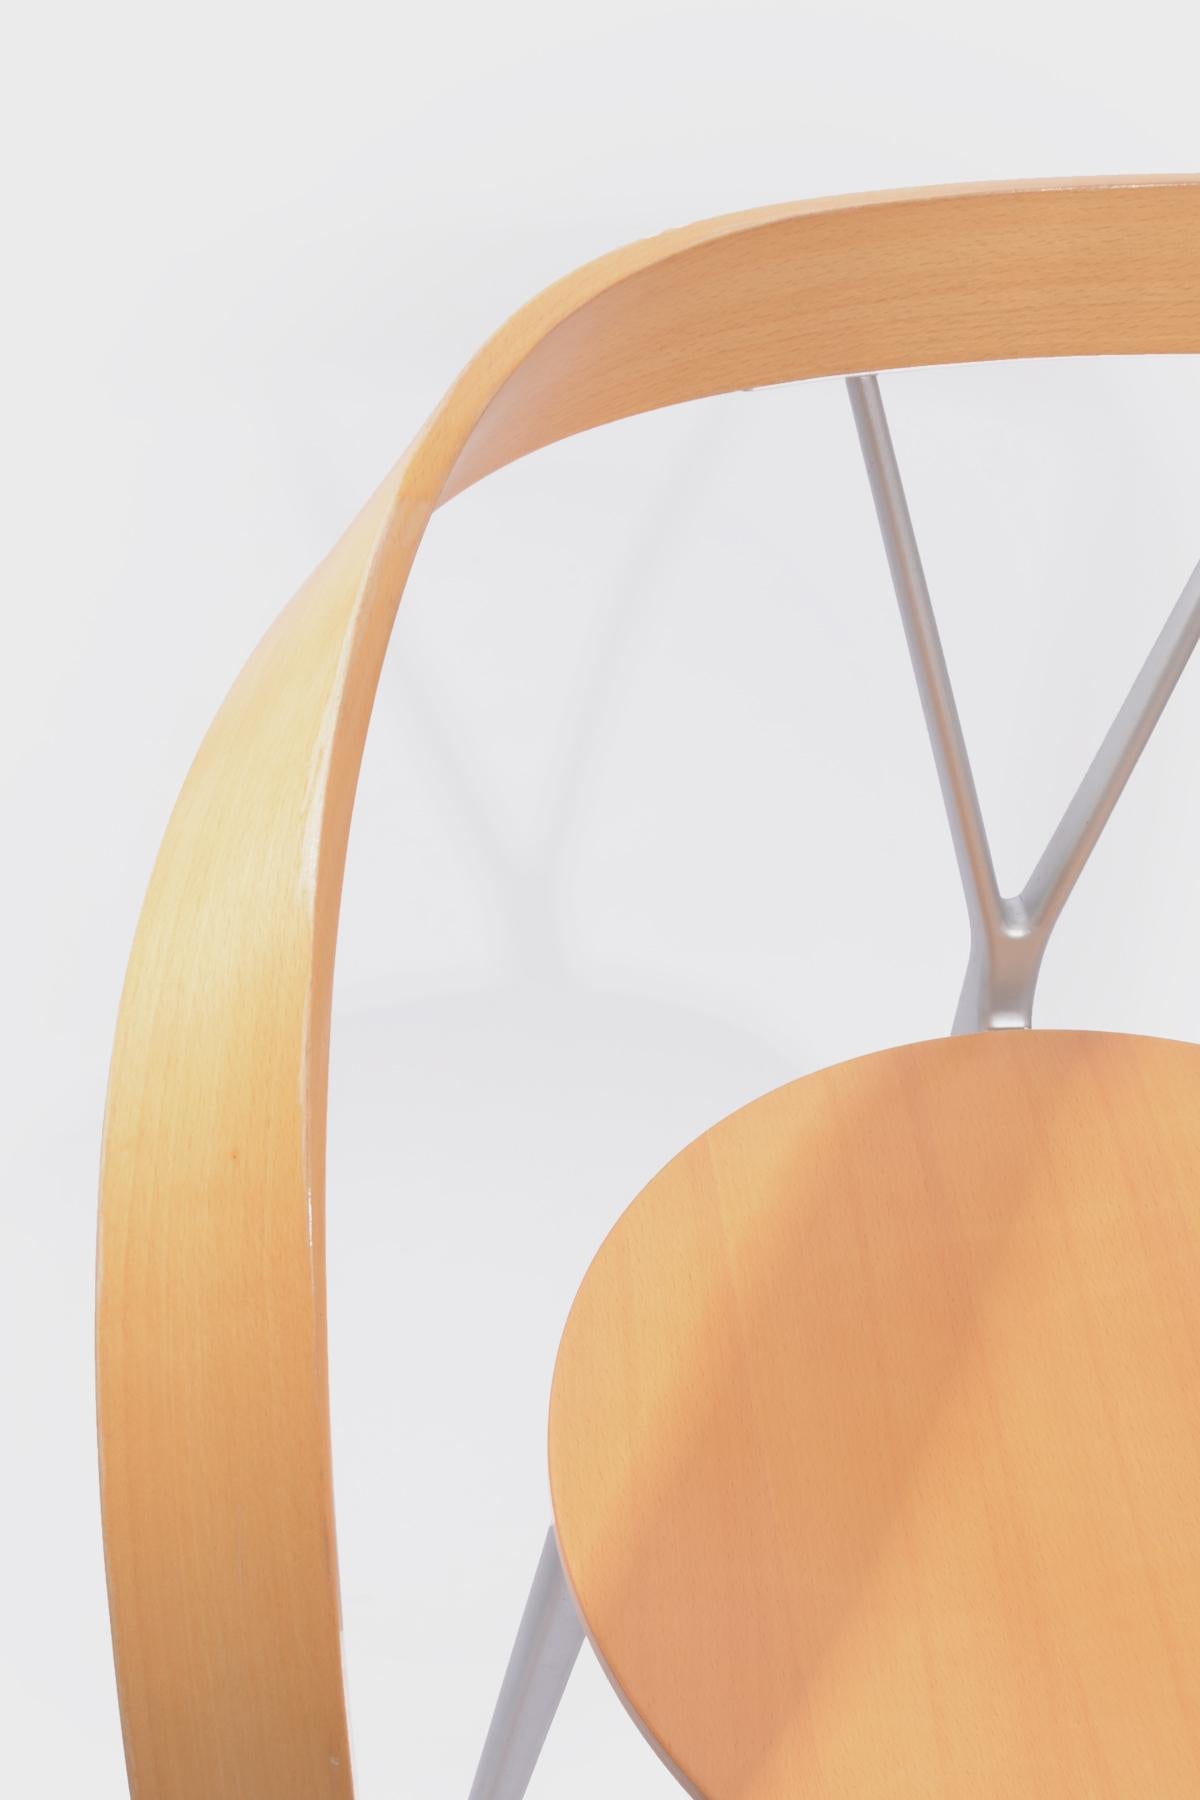 Post-Modern Revers Chair Andrea Branzi Cassina For Sale